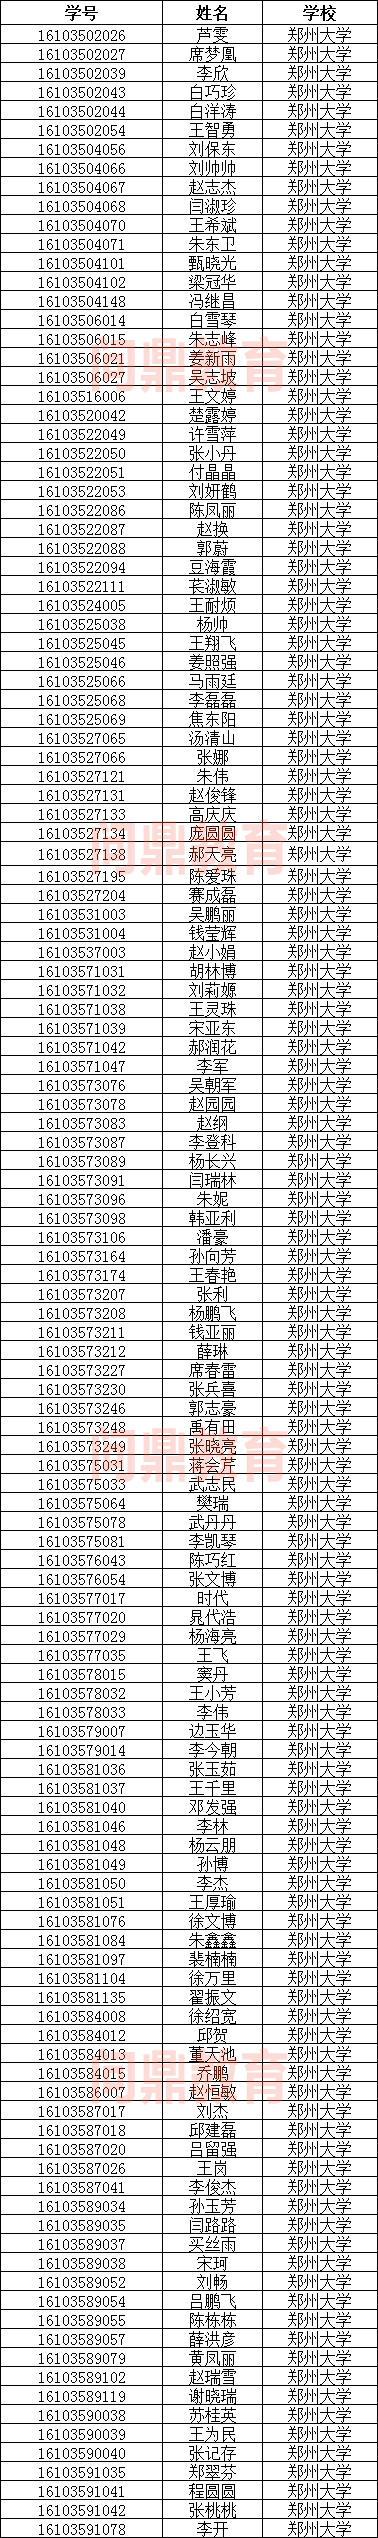 郑州市的大学毕业典礼名单.jpg